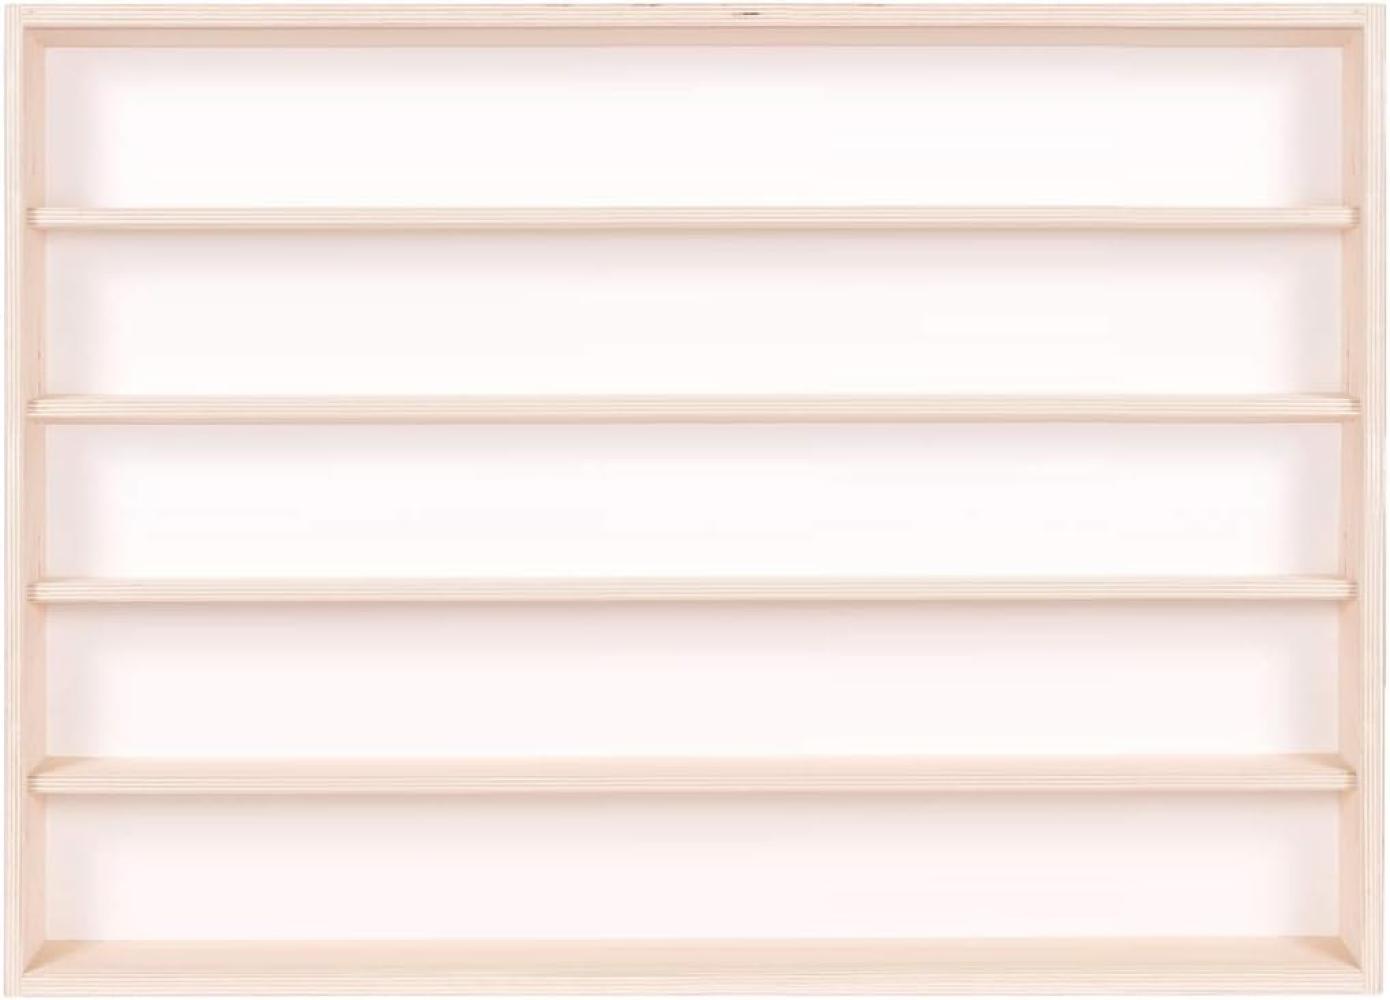 Setzkasten mit Scheibe Wandregal Sammelvitrine Deutsche Holzmanufaktur V-60. 5 Vitrine Regal Hängevitrine 60 cm x 49 cm x 8,5 cm - 5 Fächer, 2 Plexiglasscheiben - Mit Montageanleitung - Kein Zusammenbau nötig Bild 1